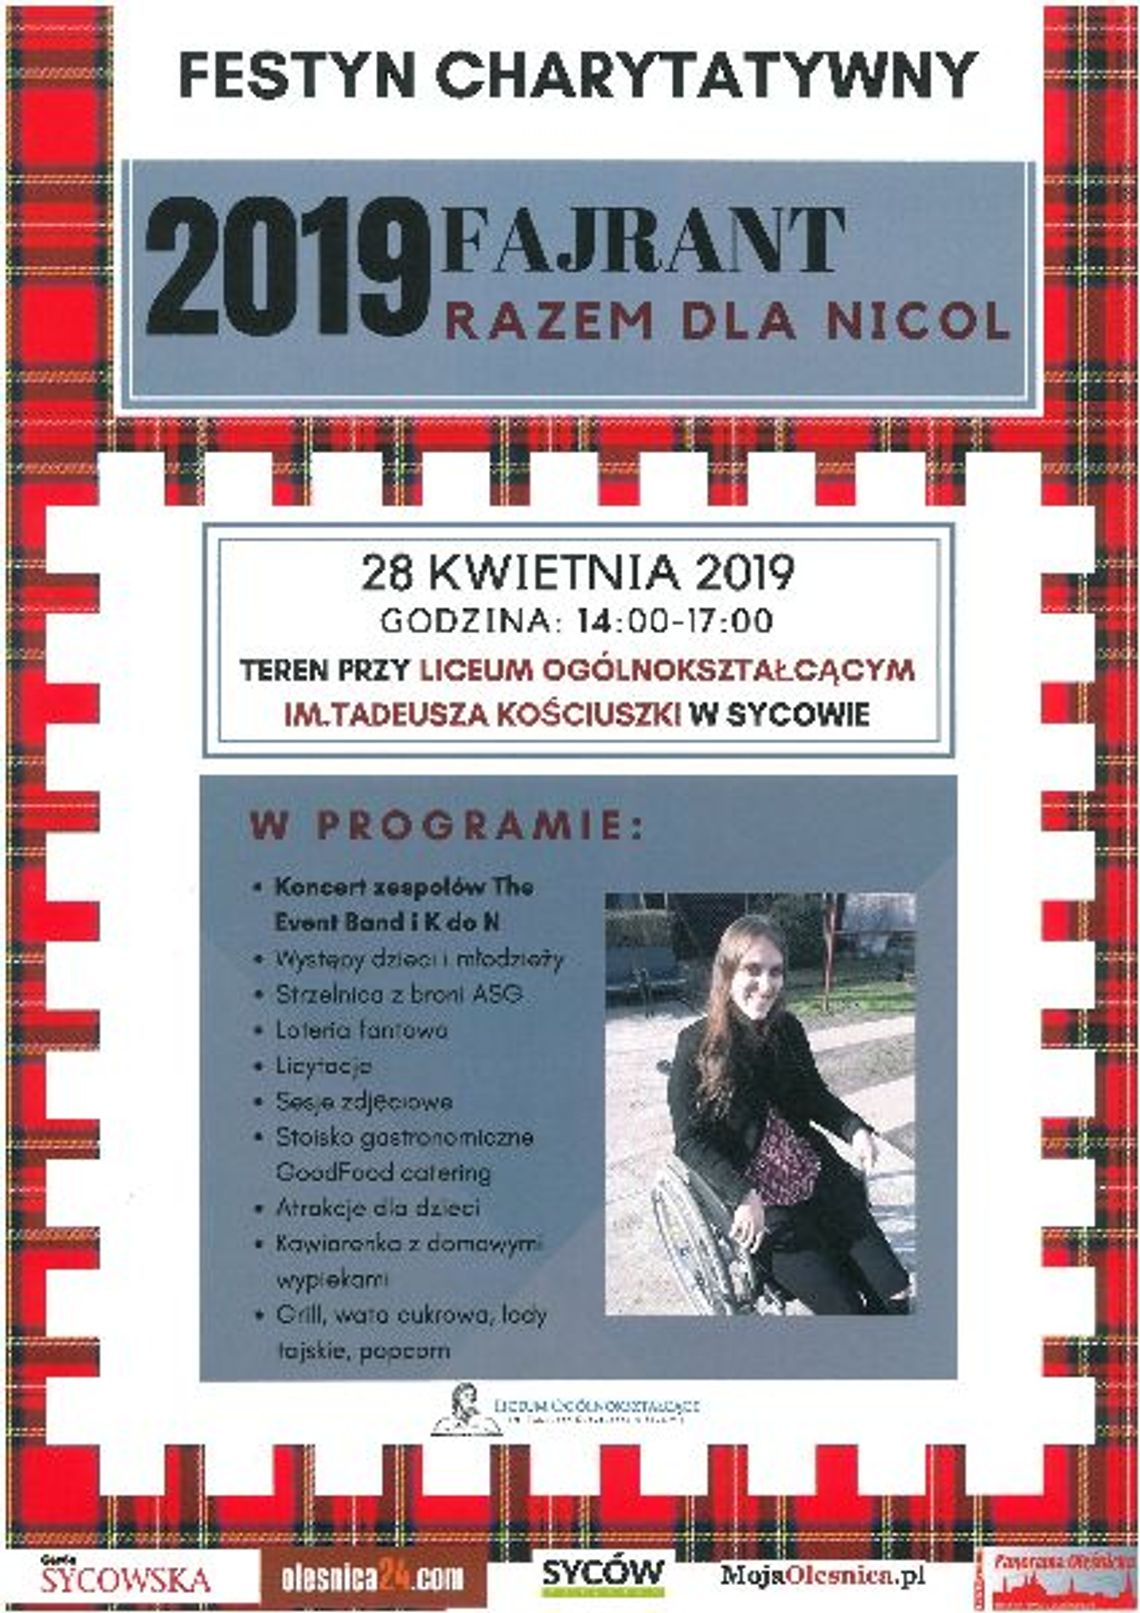 Festyn charytatywny 2019 Fajrant  "Razem dla Nicol" w Sycowie